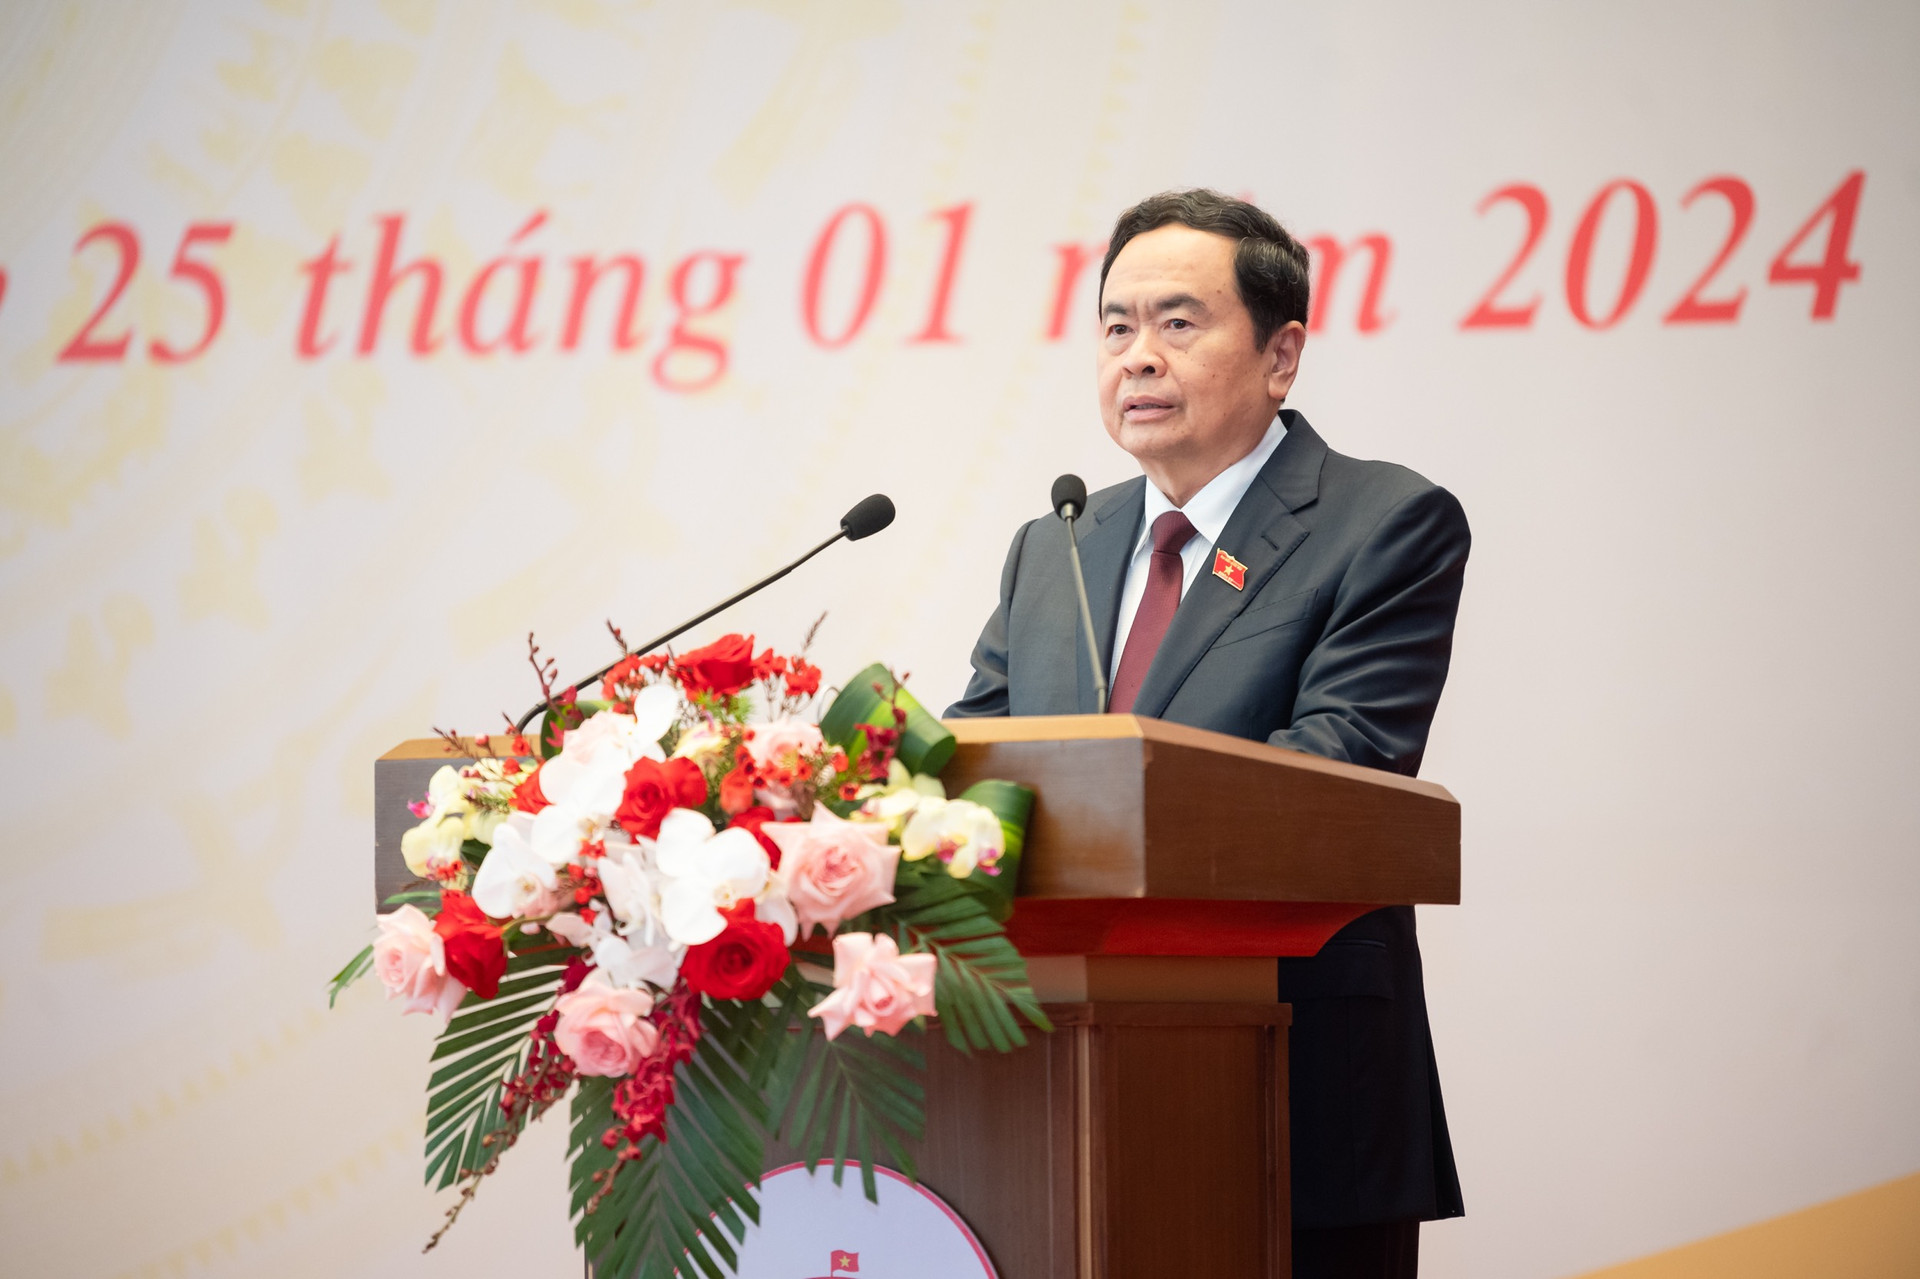 Phó Chủ tịch Thường trực Quốc hội Trần Thanh Mẫn chủ trì lễ công bố quyết định bổ nhiệm Trợ lý Chủ tịch Quốc hội